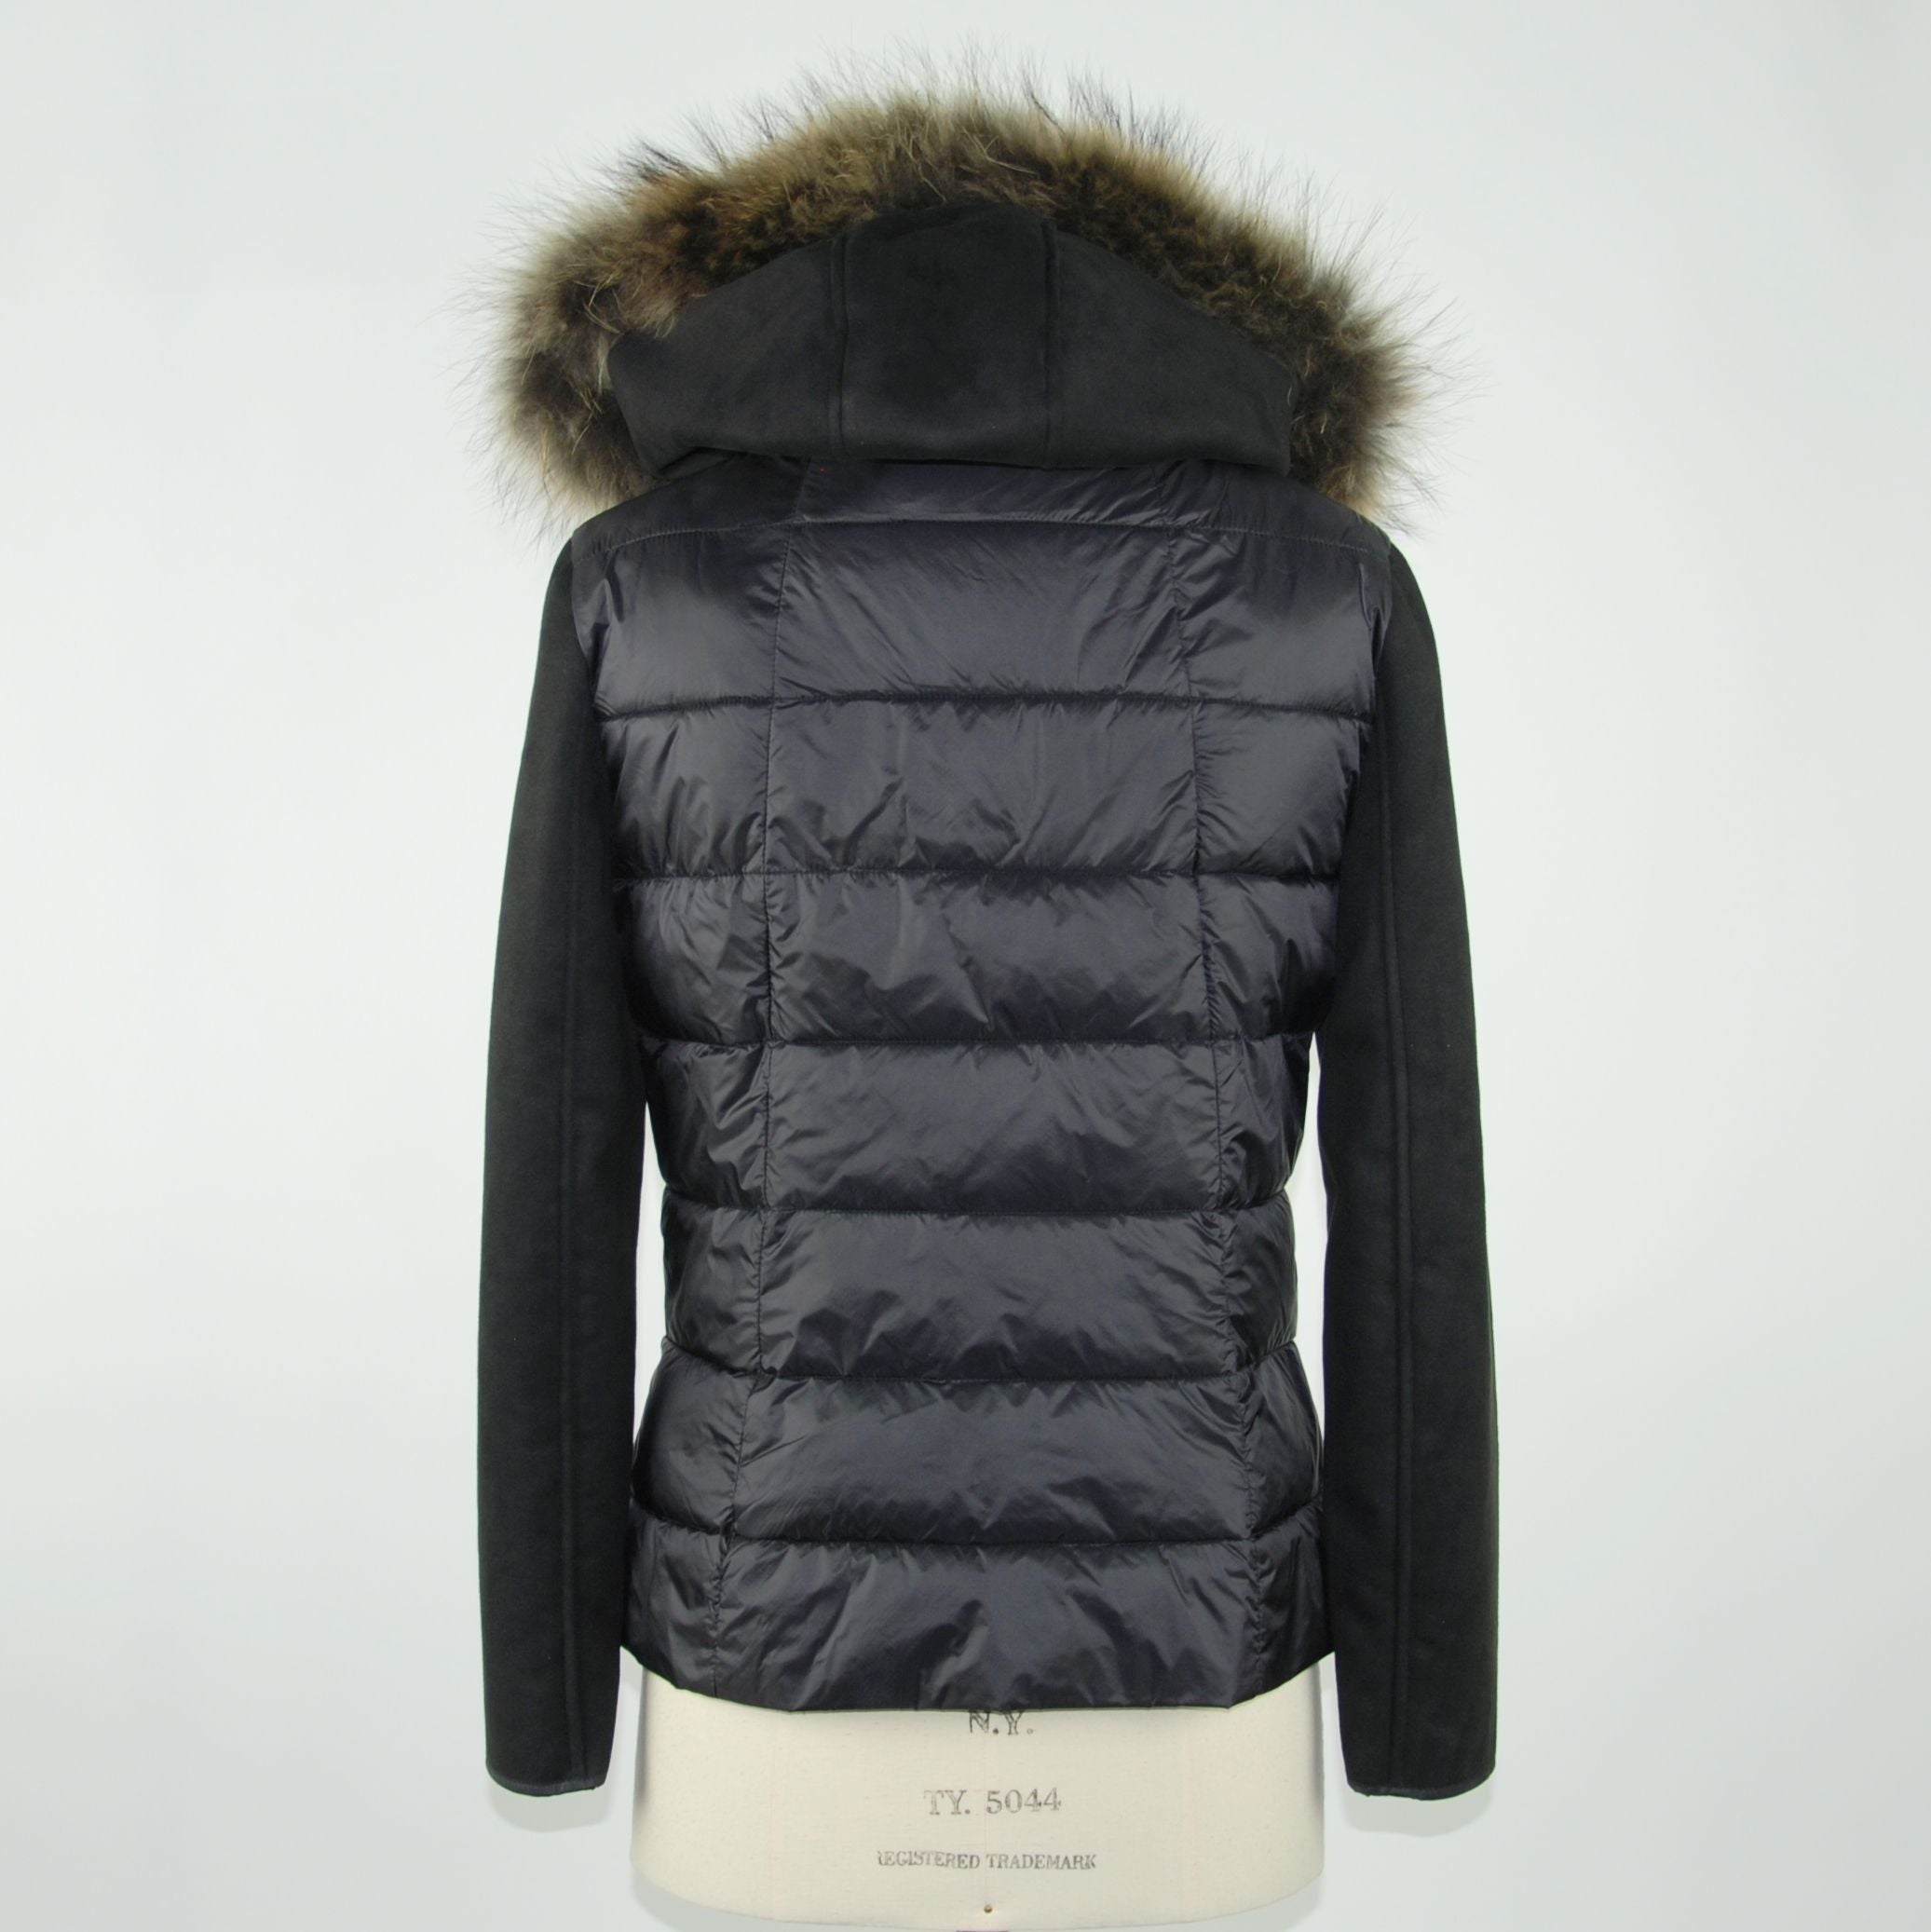 Chic Murmasky Fur-Trimmed Black Jacket